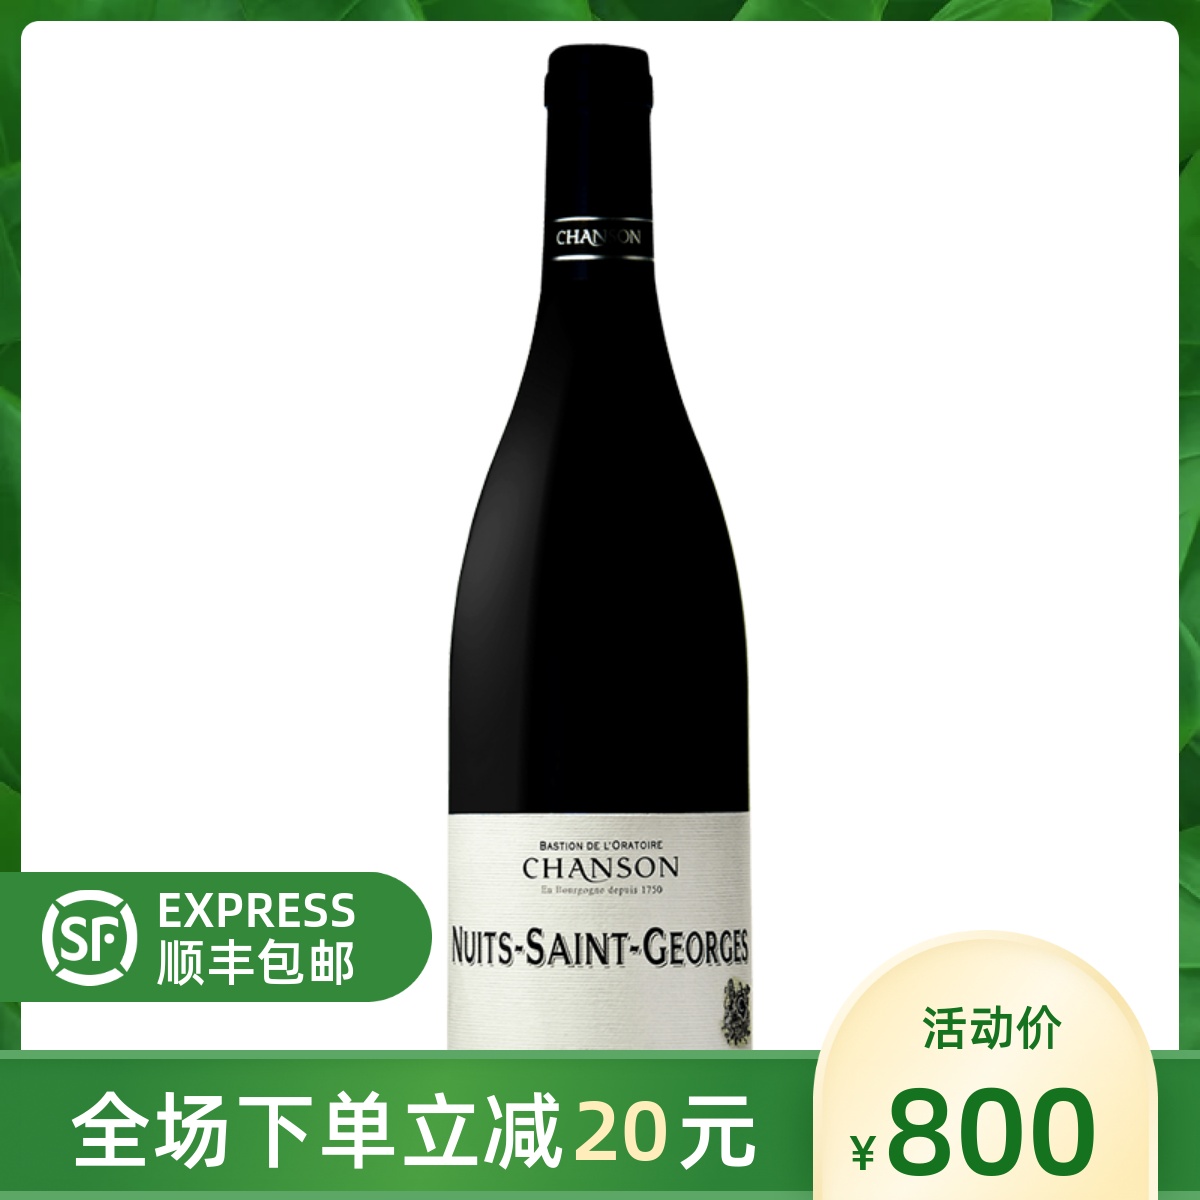 法国CHANSON NUITS ST GEORGES 香颂家族纳斯-圣若尔乔治红葡萄酒